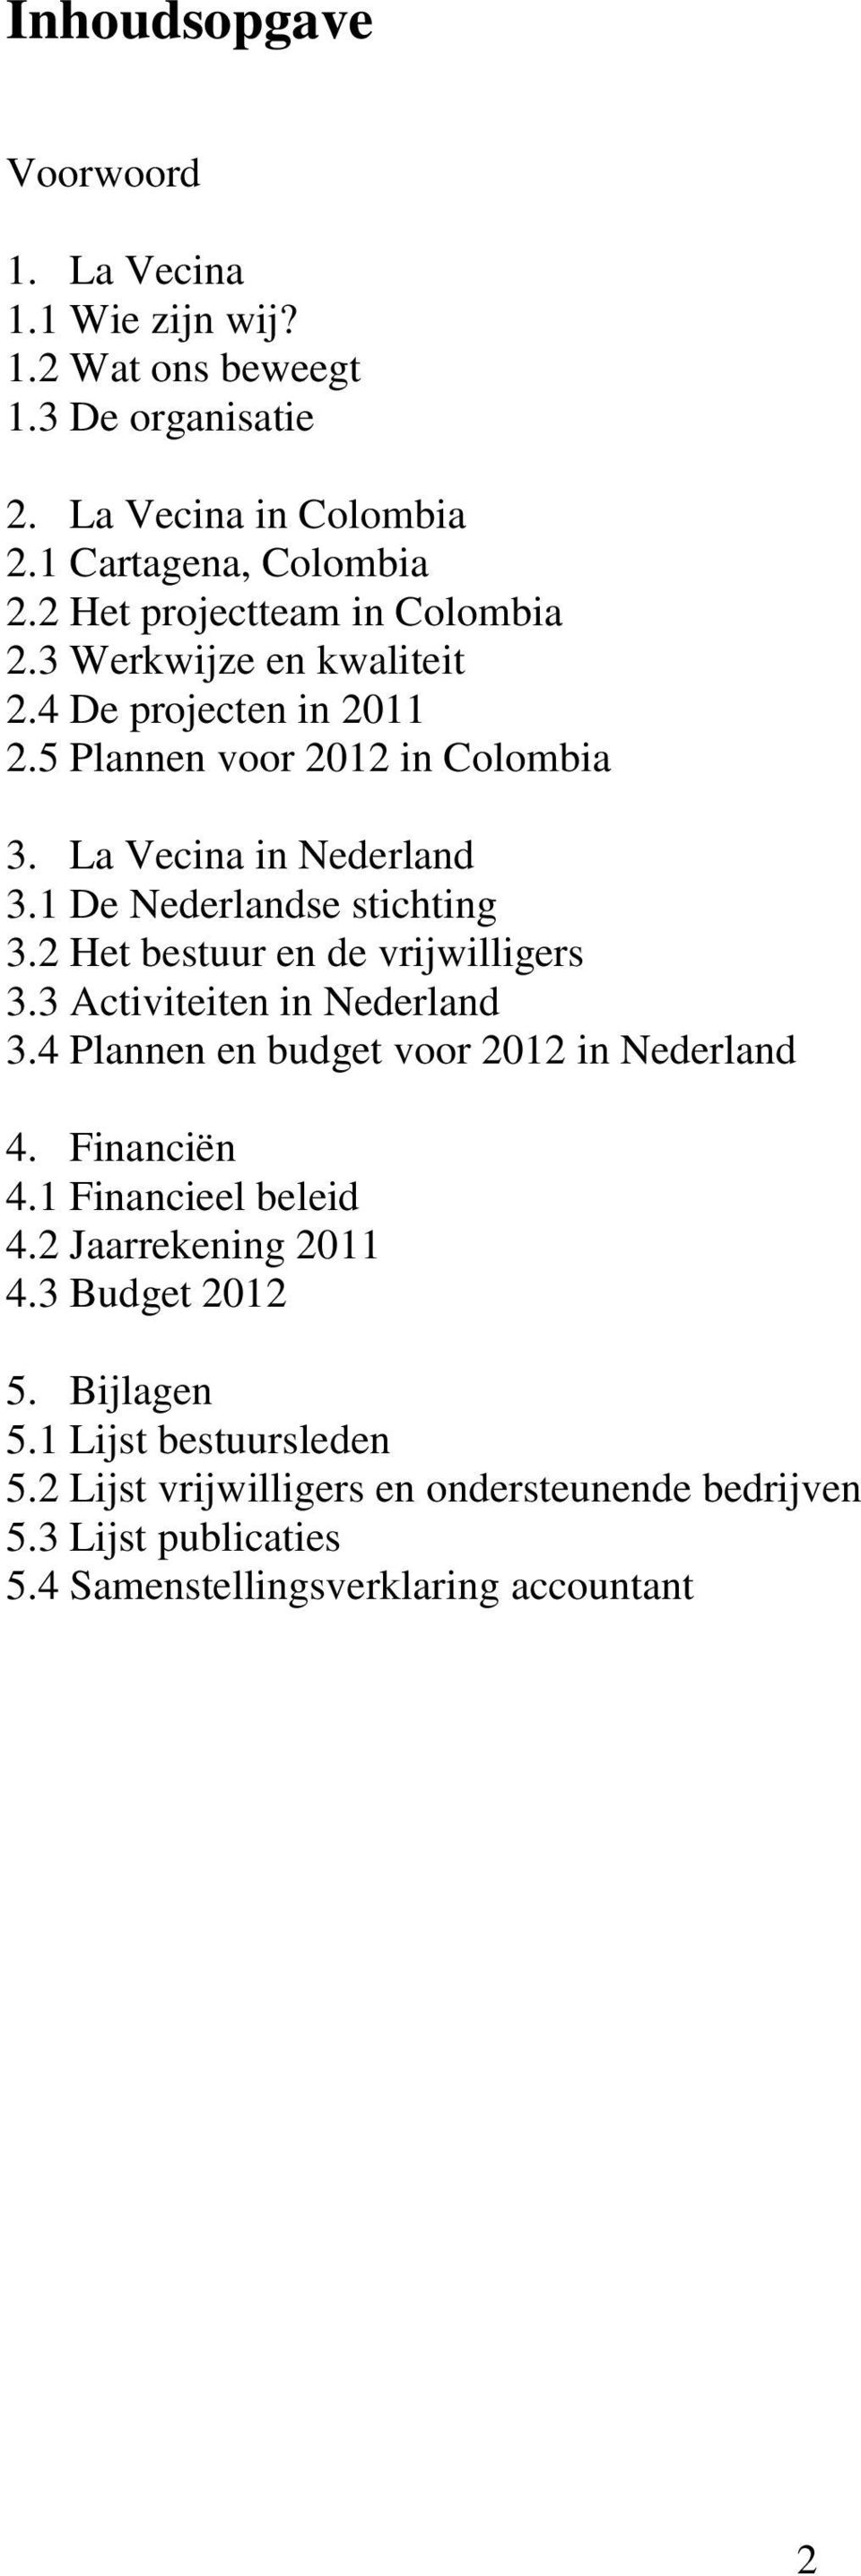 1 De Nederlandse stichting 3.2 Het bestuur en de vrijwilligers 3.3 Activiteiten in Nederland 3.4 Plannen en budget voor 2012 in Nederland 4. Financiën 4.